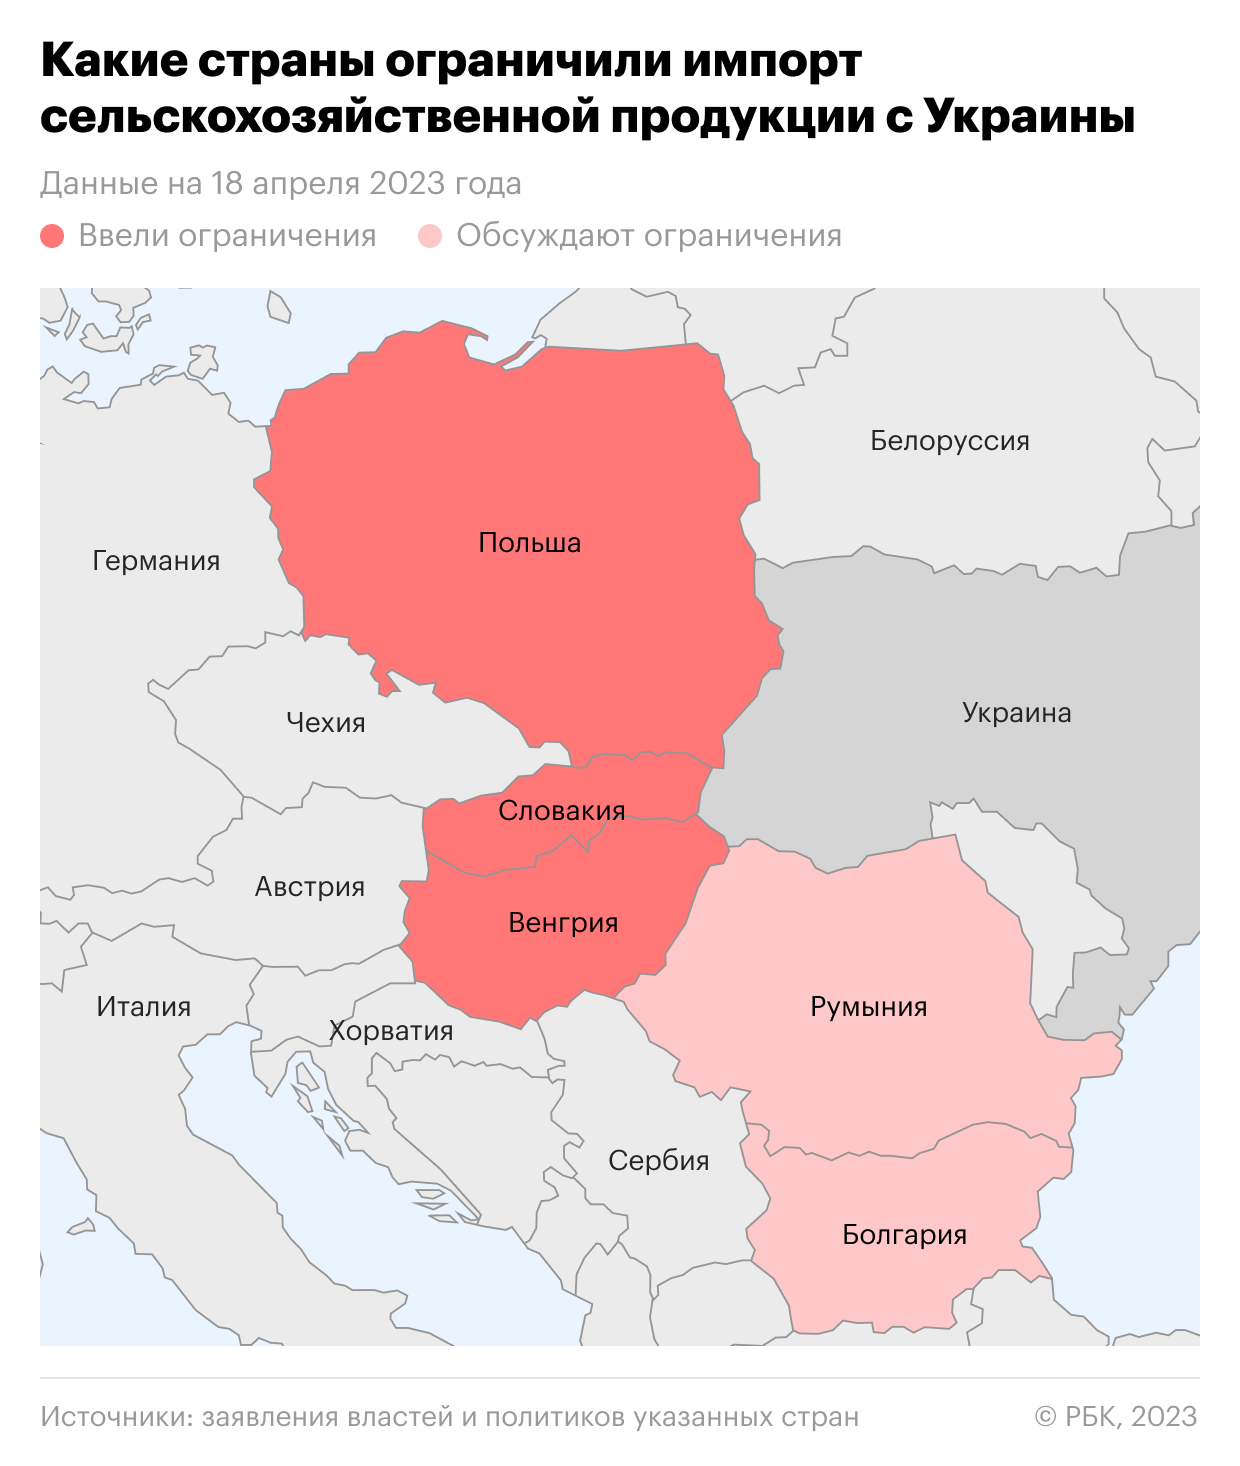 Какие страны ограничили импорт сельхозпродукции с Украины. Карта"/>













